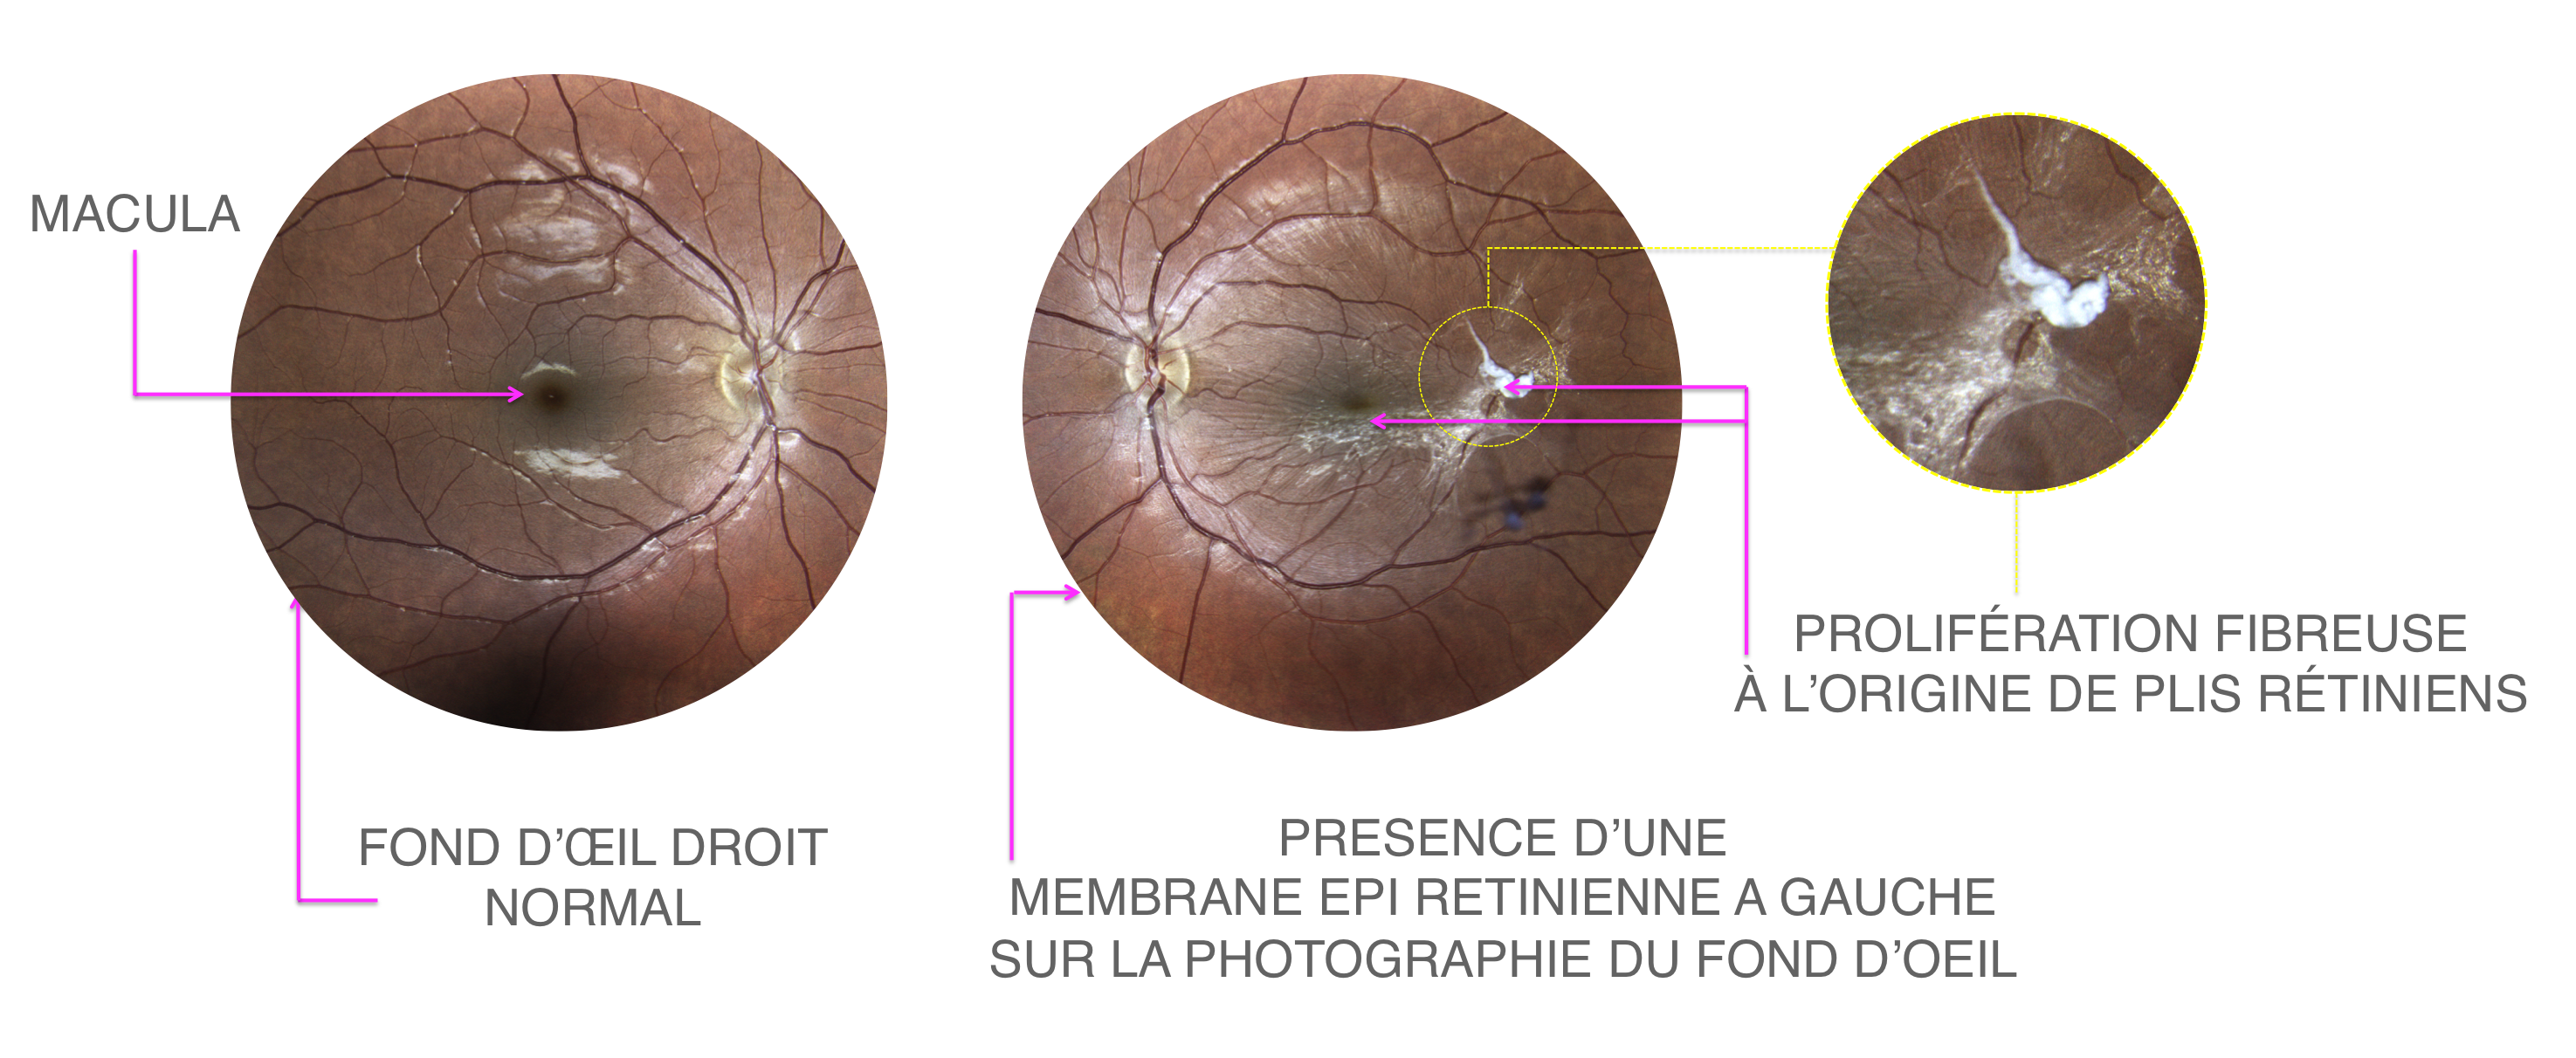 membrane épirétinienne : rétraction fibreuse visible au centre de la photographie du fond d'oeil